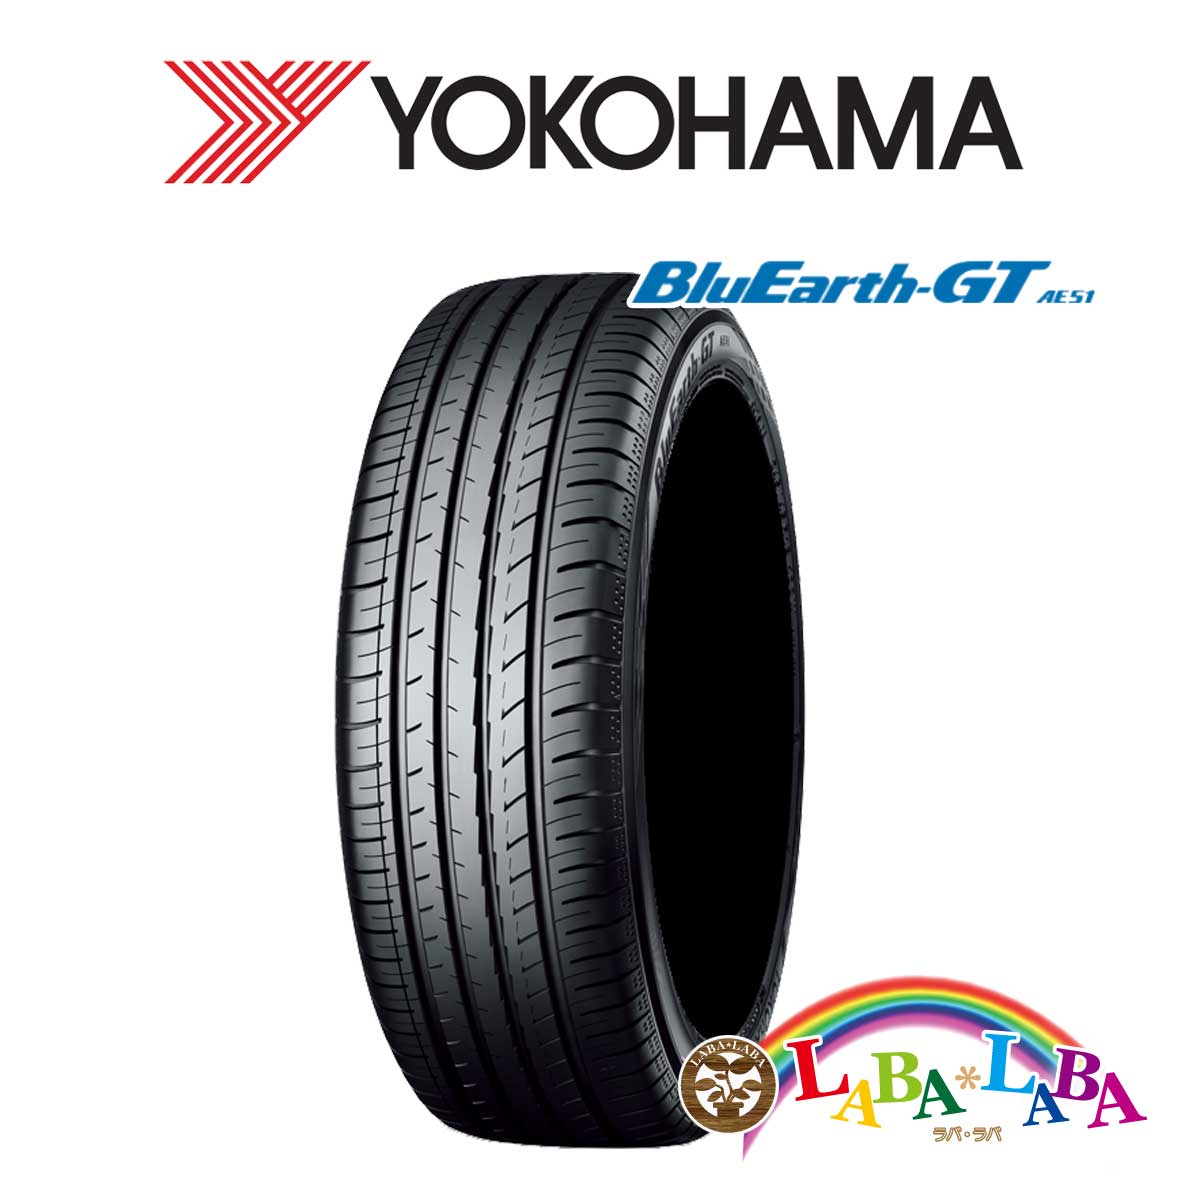 送料無料 爆売り 国産タイヤ サマータイヤ 新品 タイヤのみ 市販 4本SET YOKOHAMA ヨコハマ 94H 4本セット ブルーアース 65R15 205 AE51 BluEarth-GT